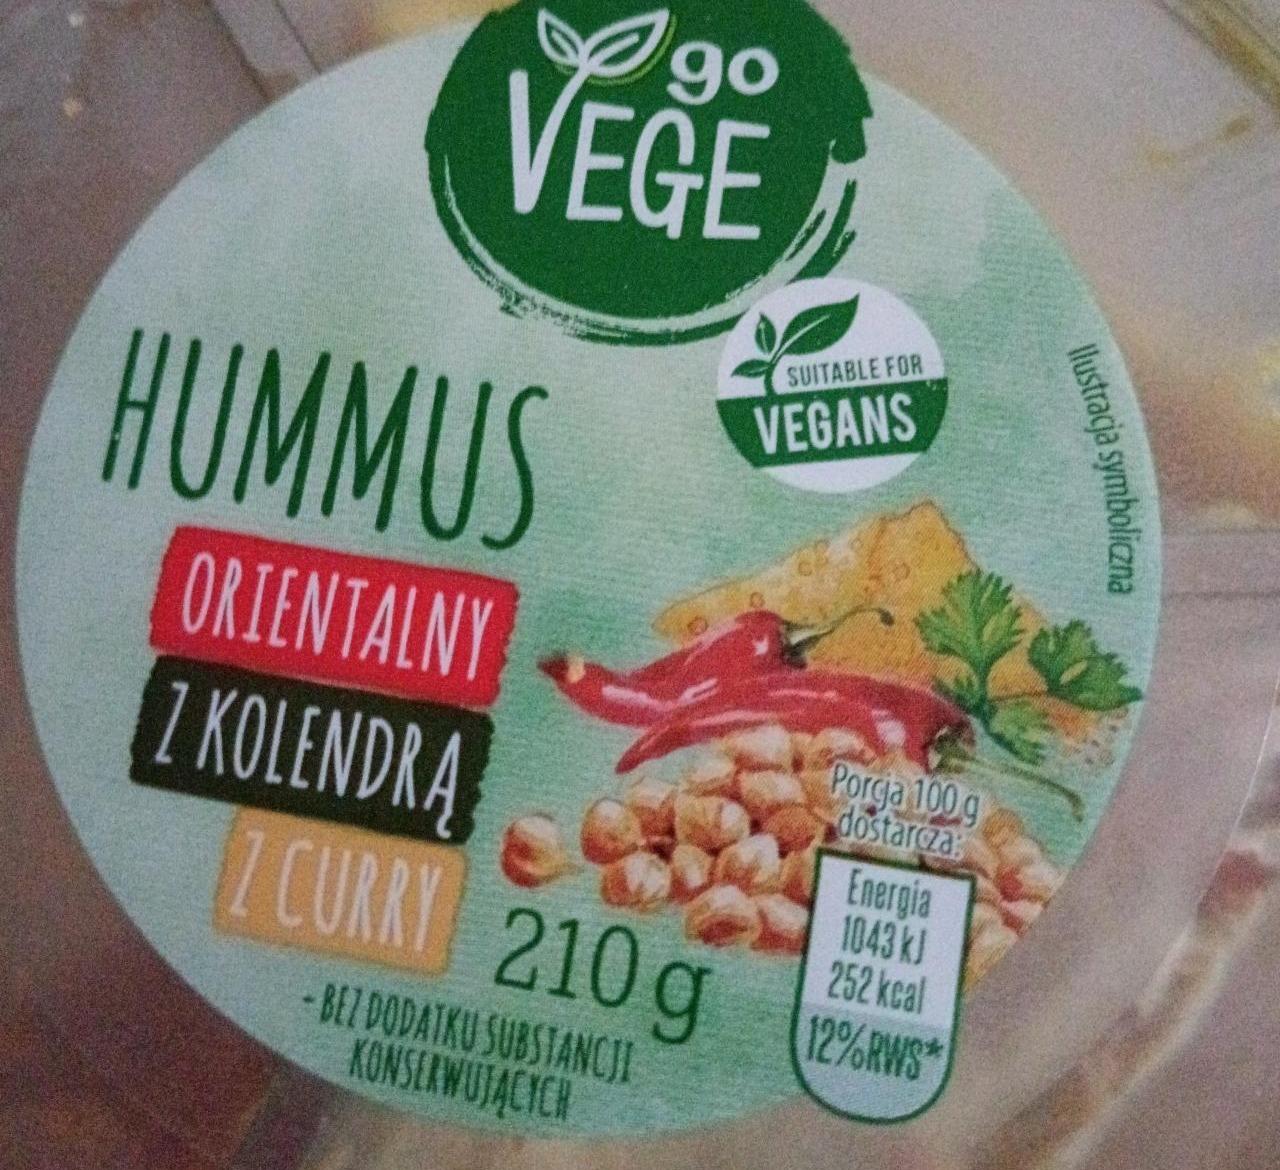 Zdjęcia - Hummus Orientalny z kolendrą z curry Go Vege